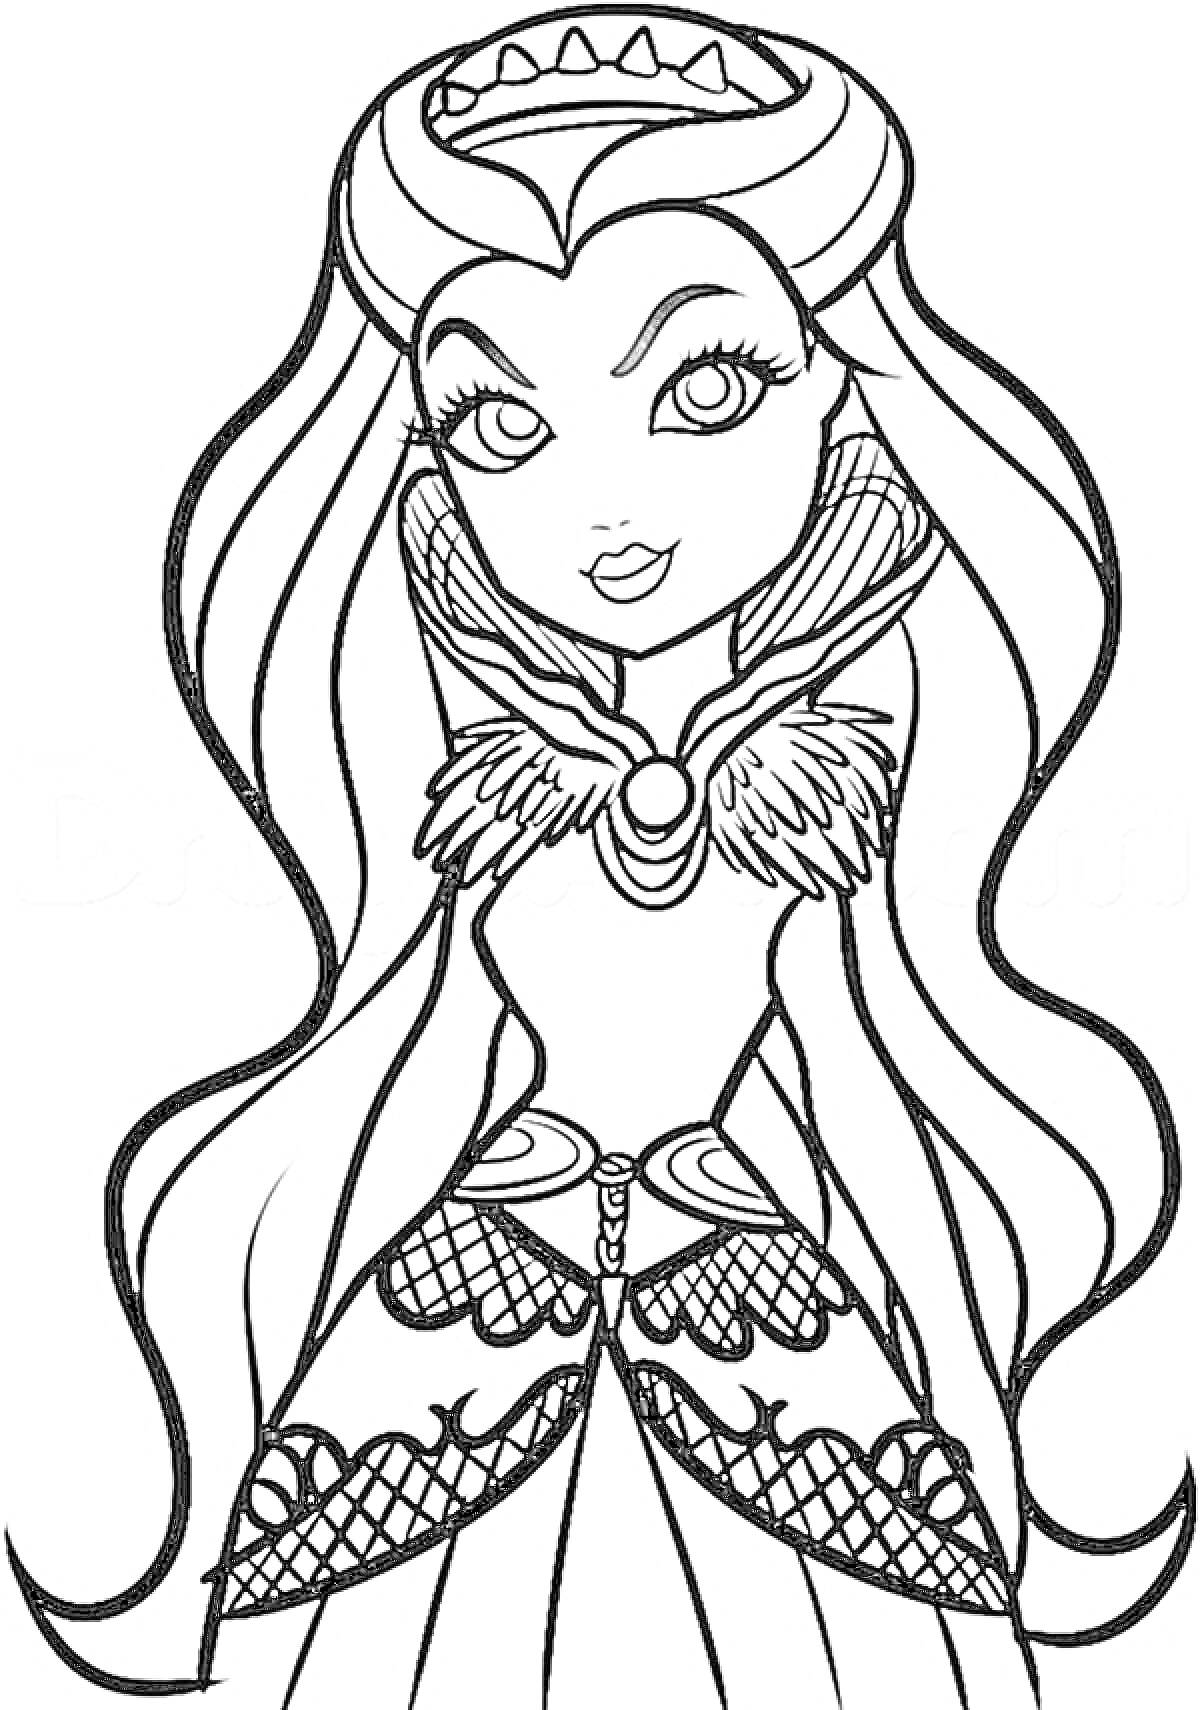 Раскраска Девочка с длинными волосами и короной, в платье с кружевной вставкой и высоким воротником в стиле Эвер Афтер Хай